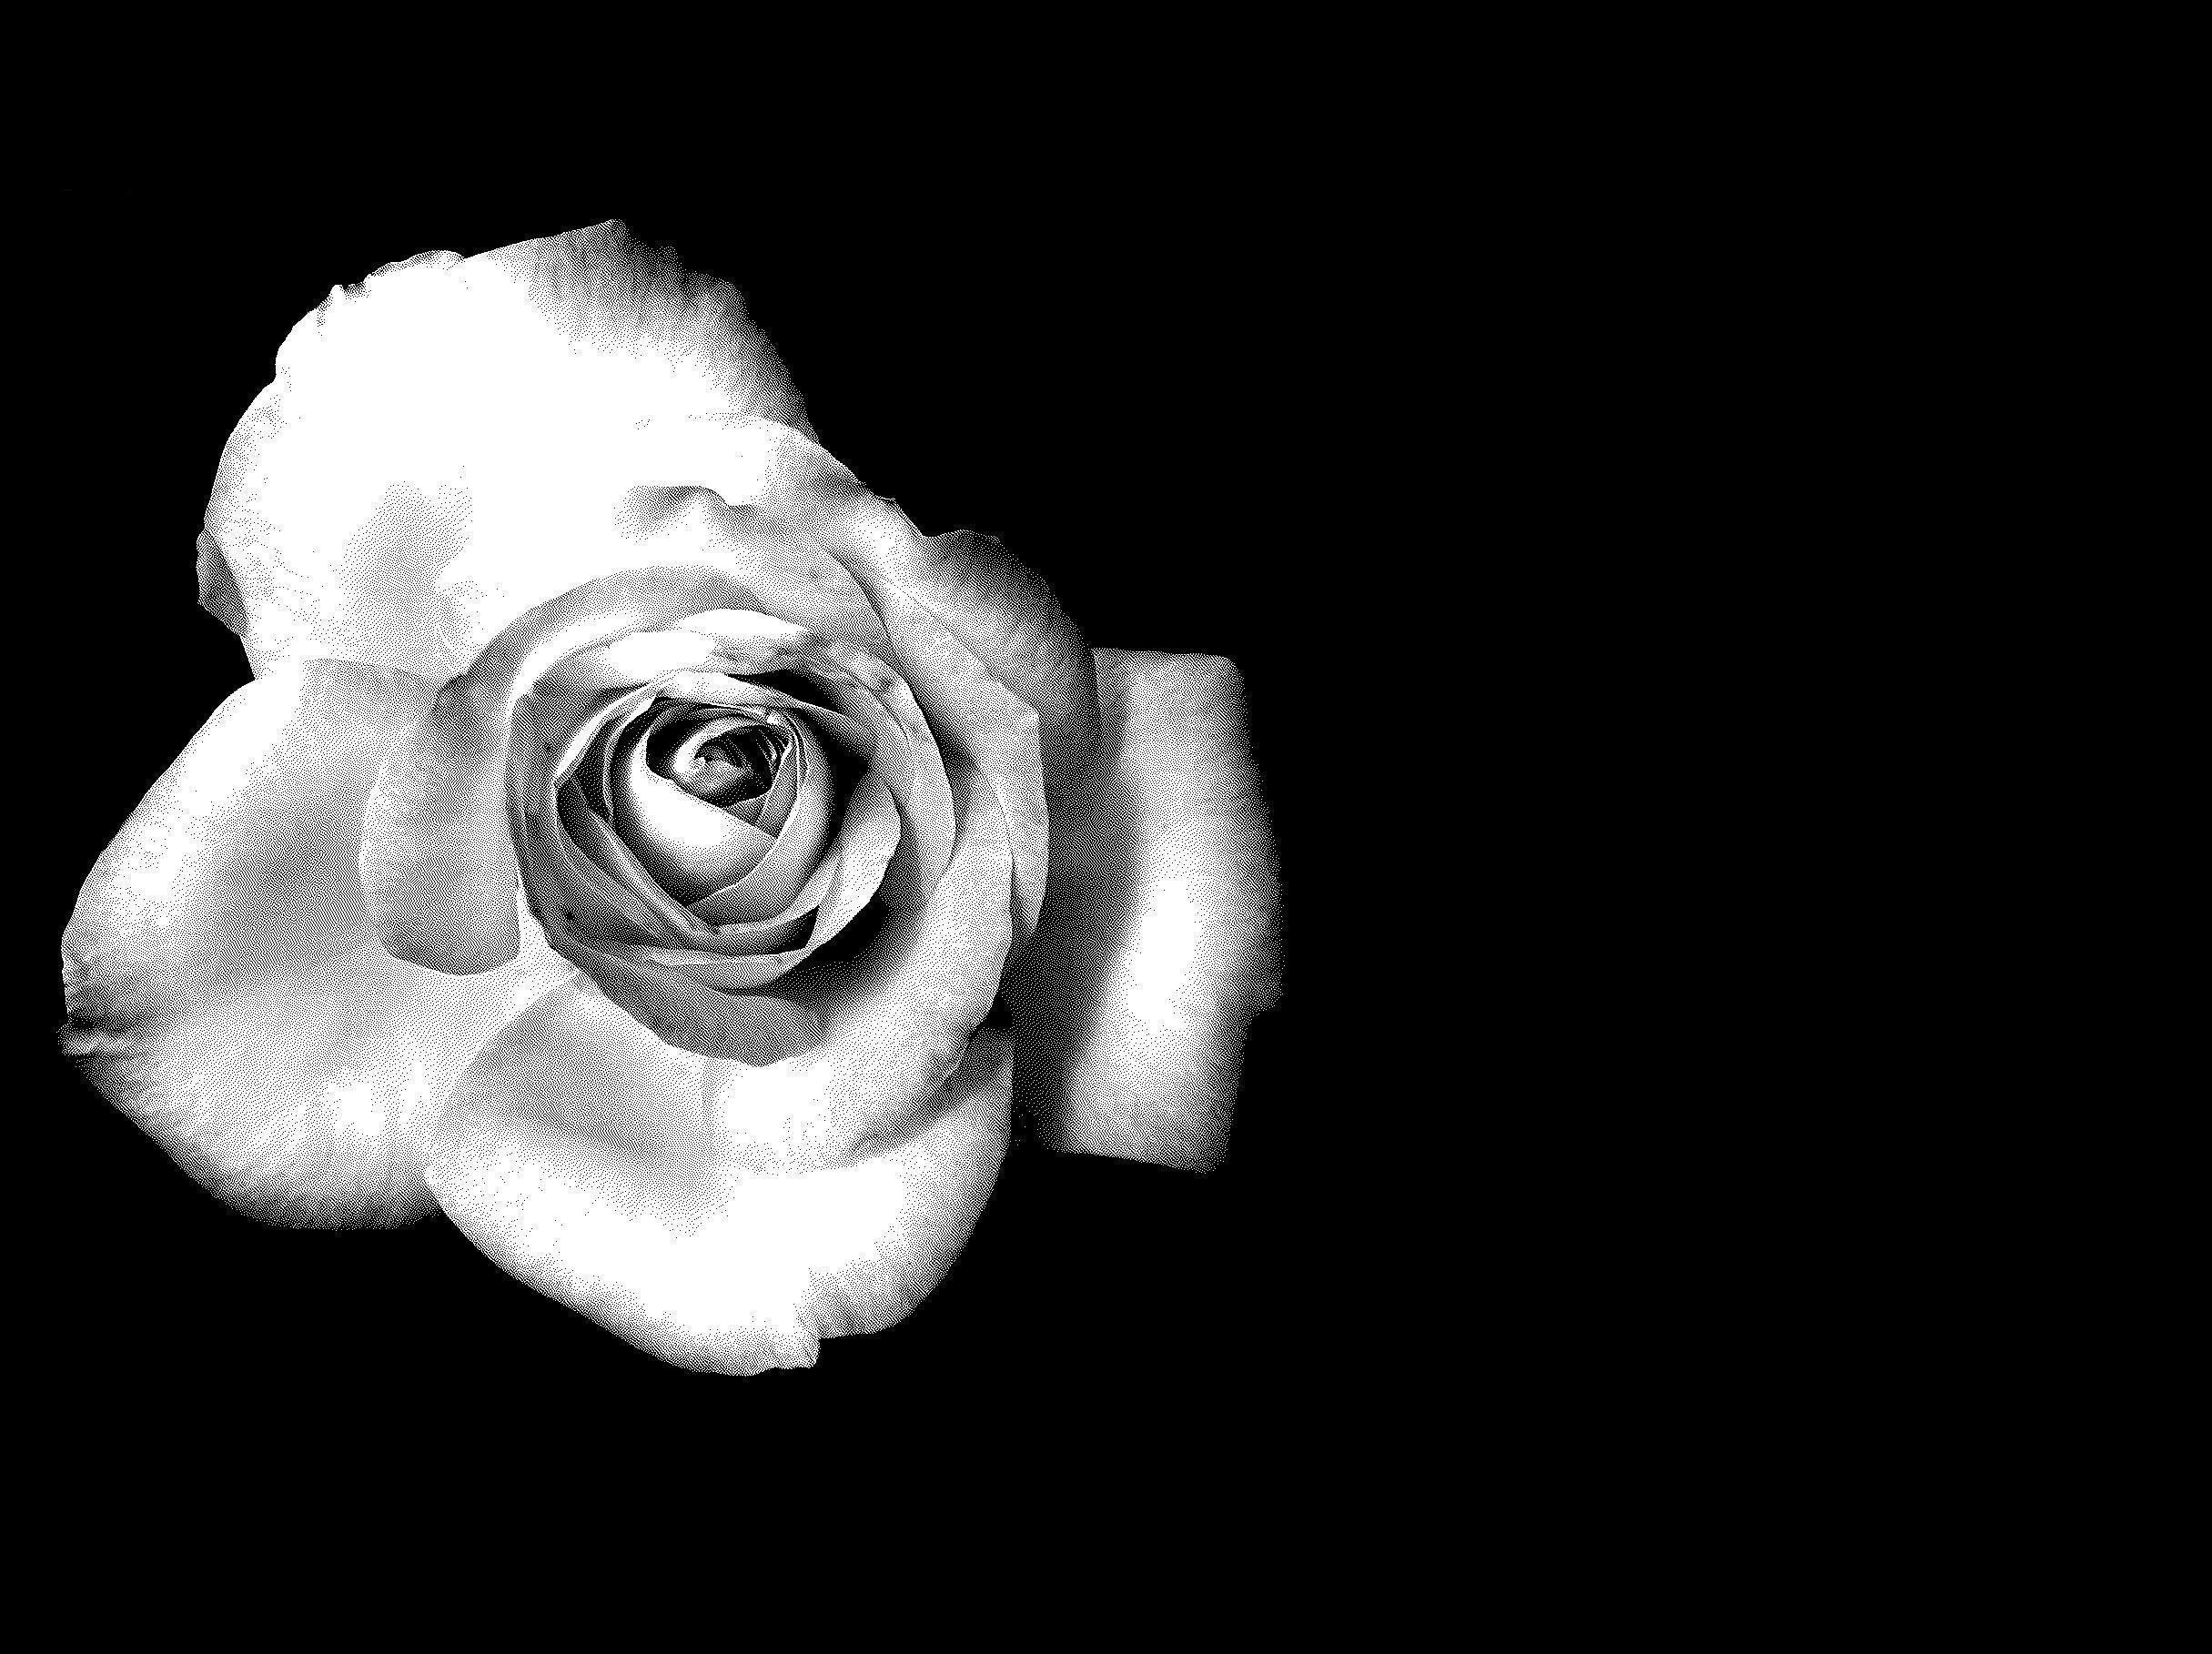 BlackAndWhite Rose Flower  Free photo on Pixabay  Pixabay